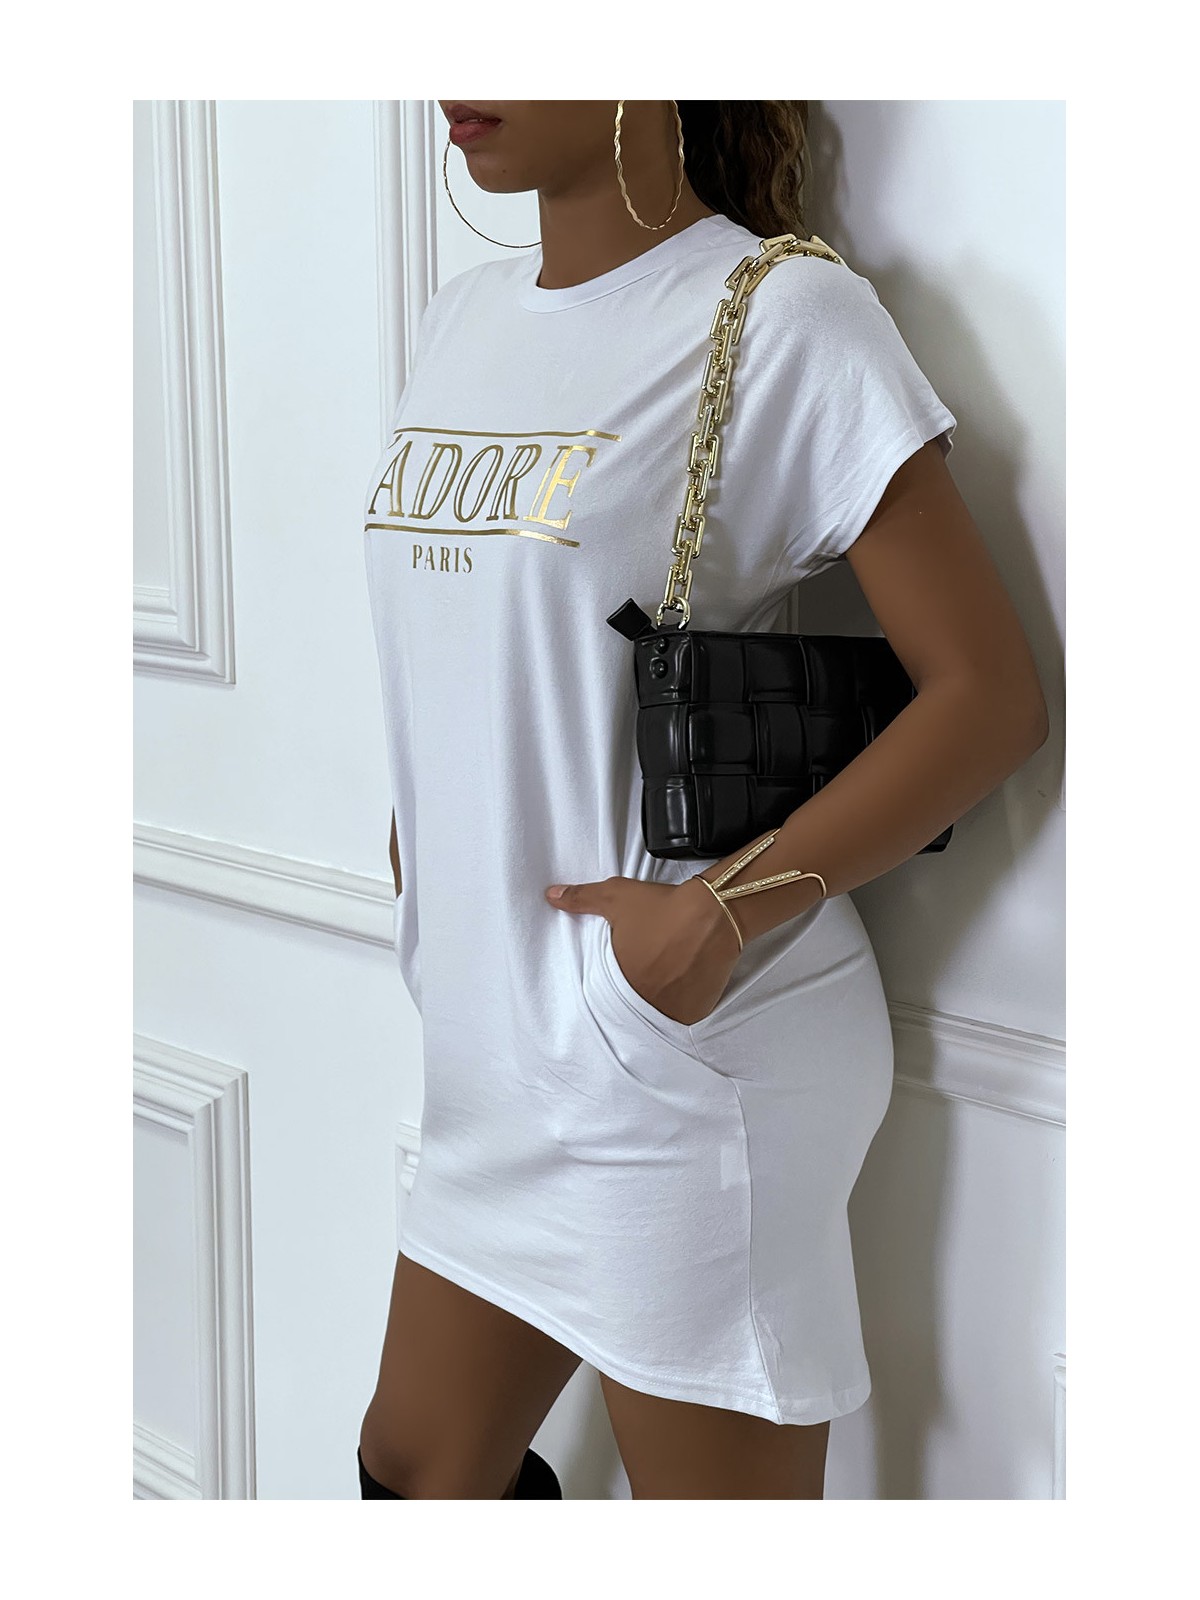 Robe T-shirt courte asymétrique blanc avec écriture doré "J'adore" et poches - 7